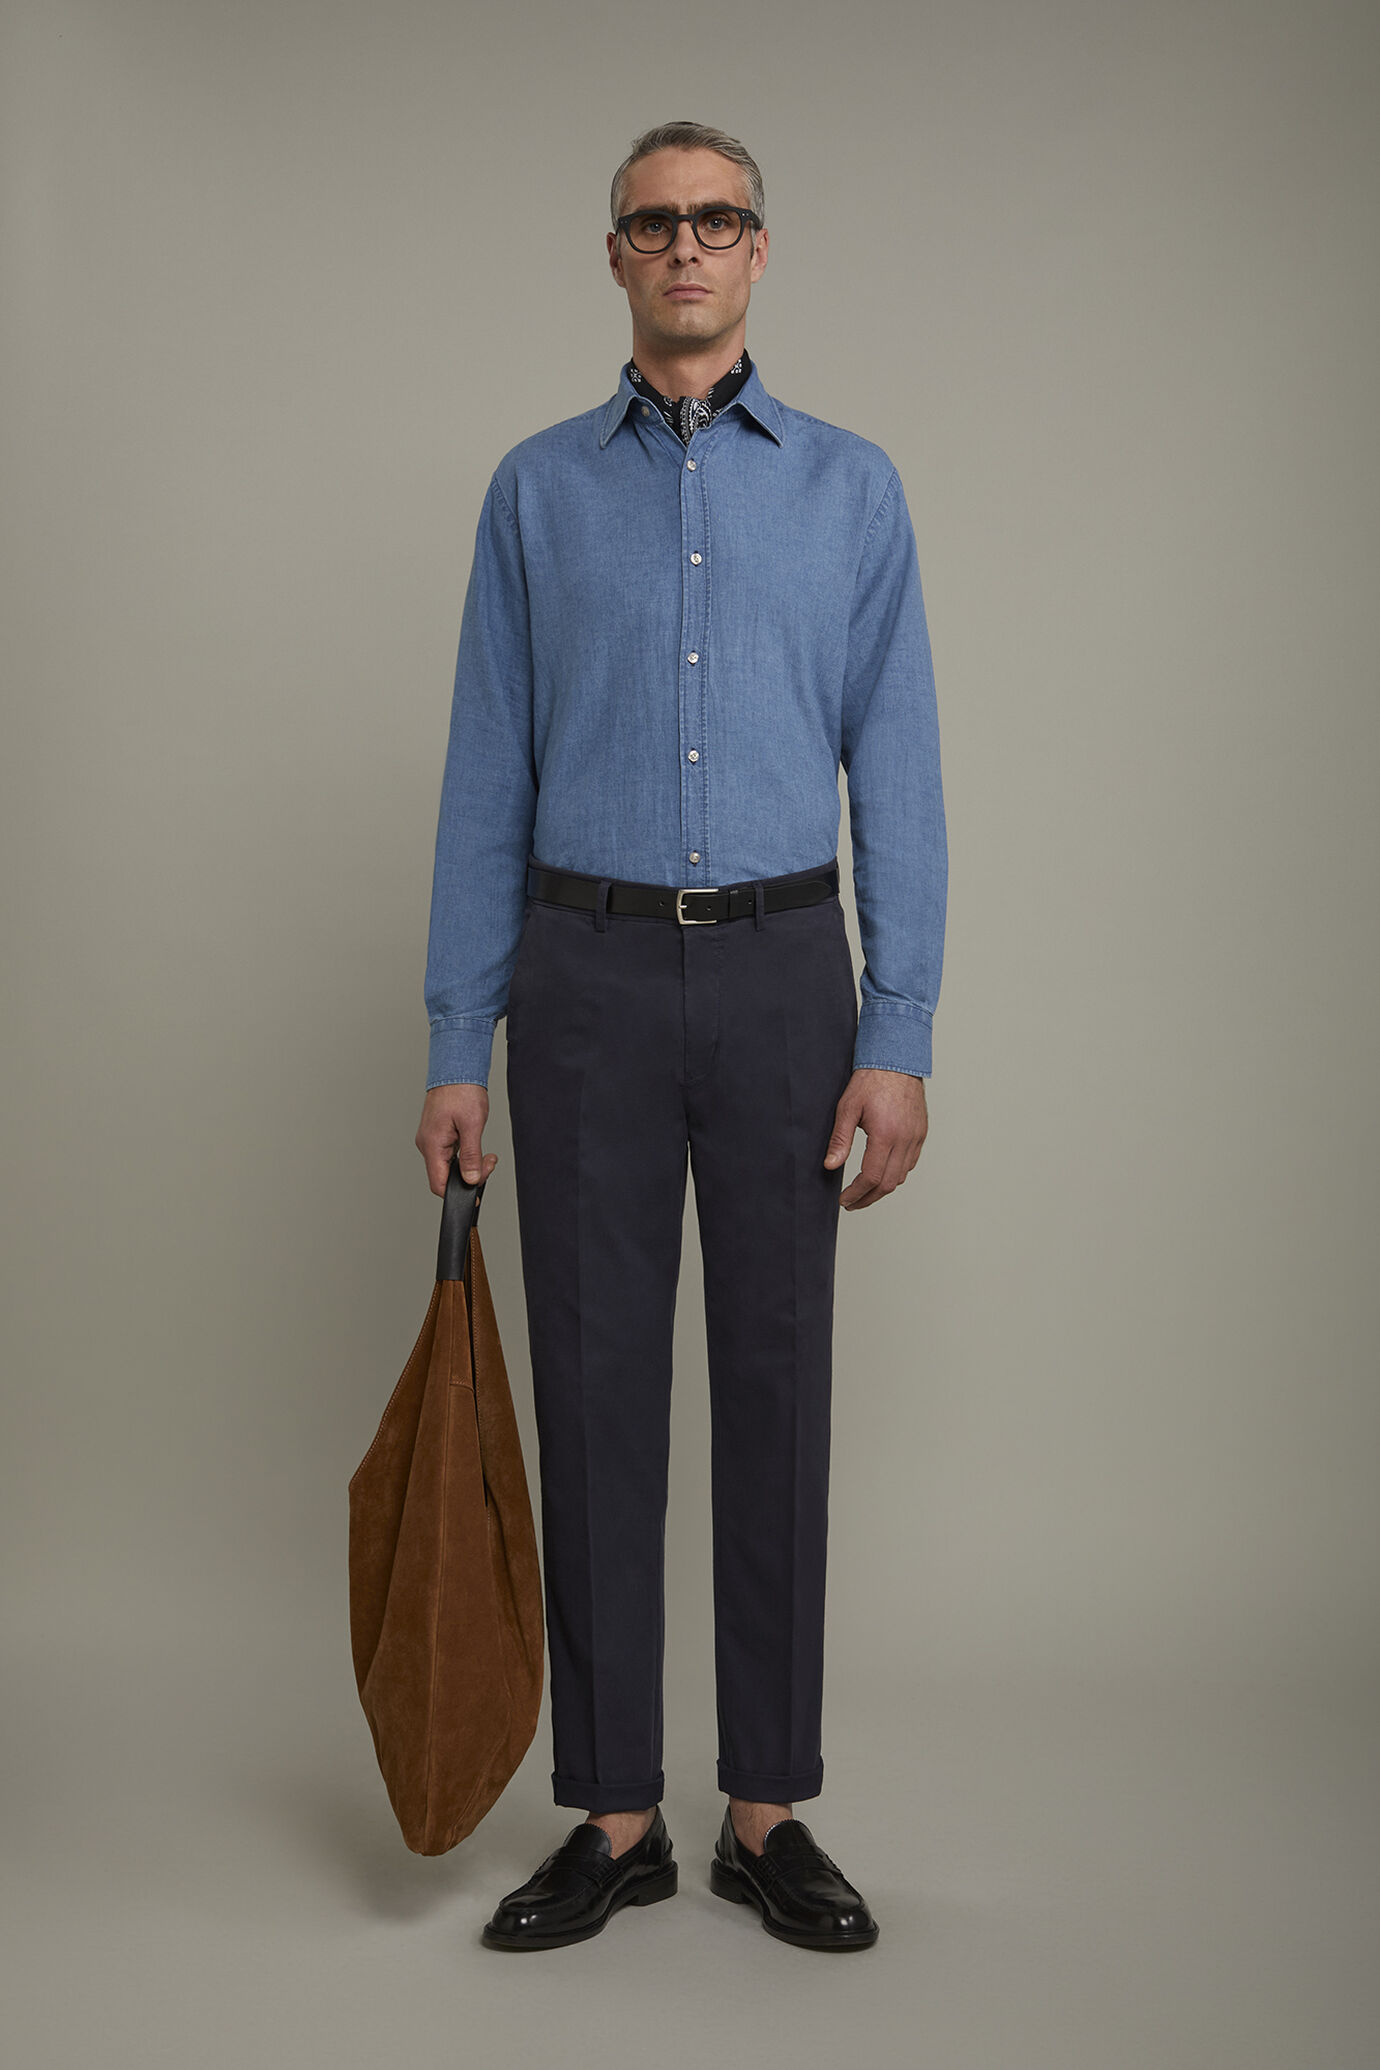 Classic men's trousers cotton cannetè fabric regular fit